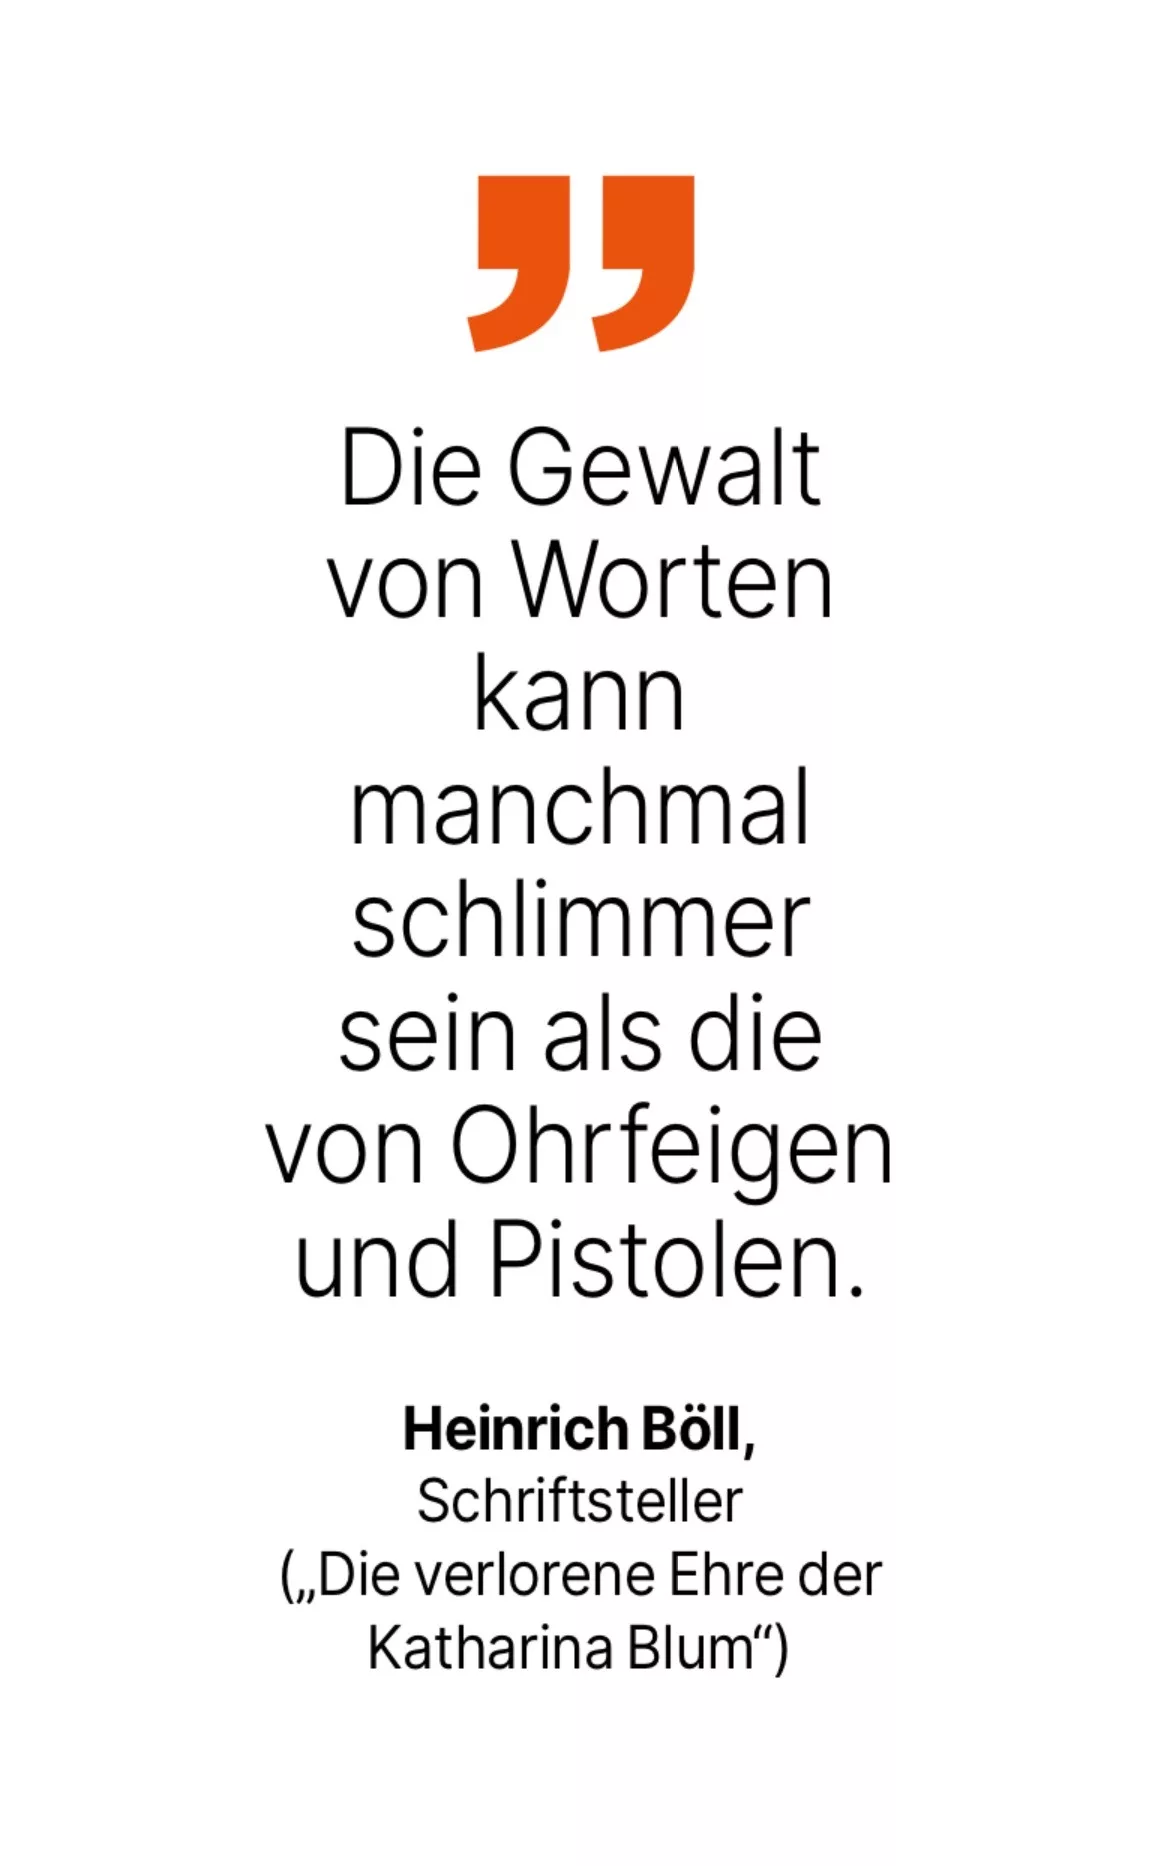 Heinrich Böll, Schriftsteller ('Die verlorene Ehre der Katharina Blum'): Die Gewalt von Worten kann manchmal schlimmer sein als die von Ohrfeigen und Pistolen.